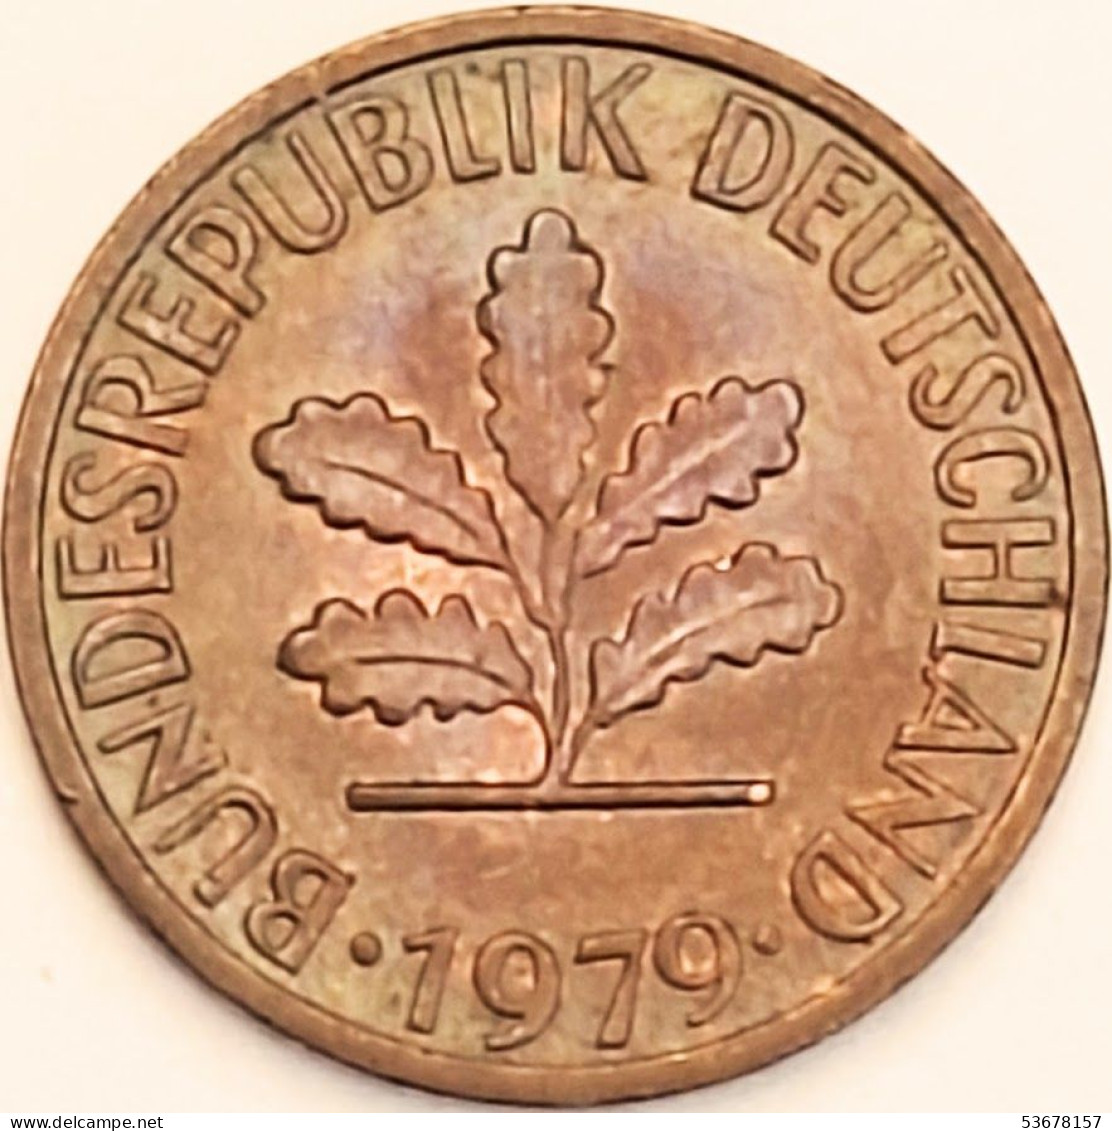 Germany Federal Republic - Pfennig 1979 D, KM# 105 (#4478) - 1 Pfennig